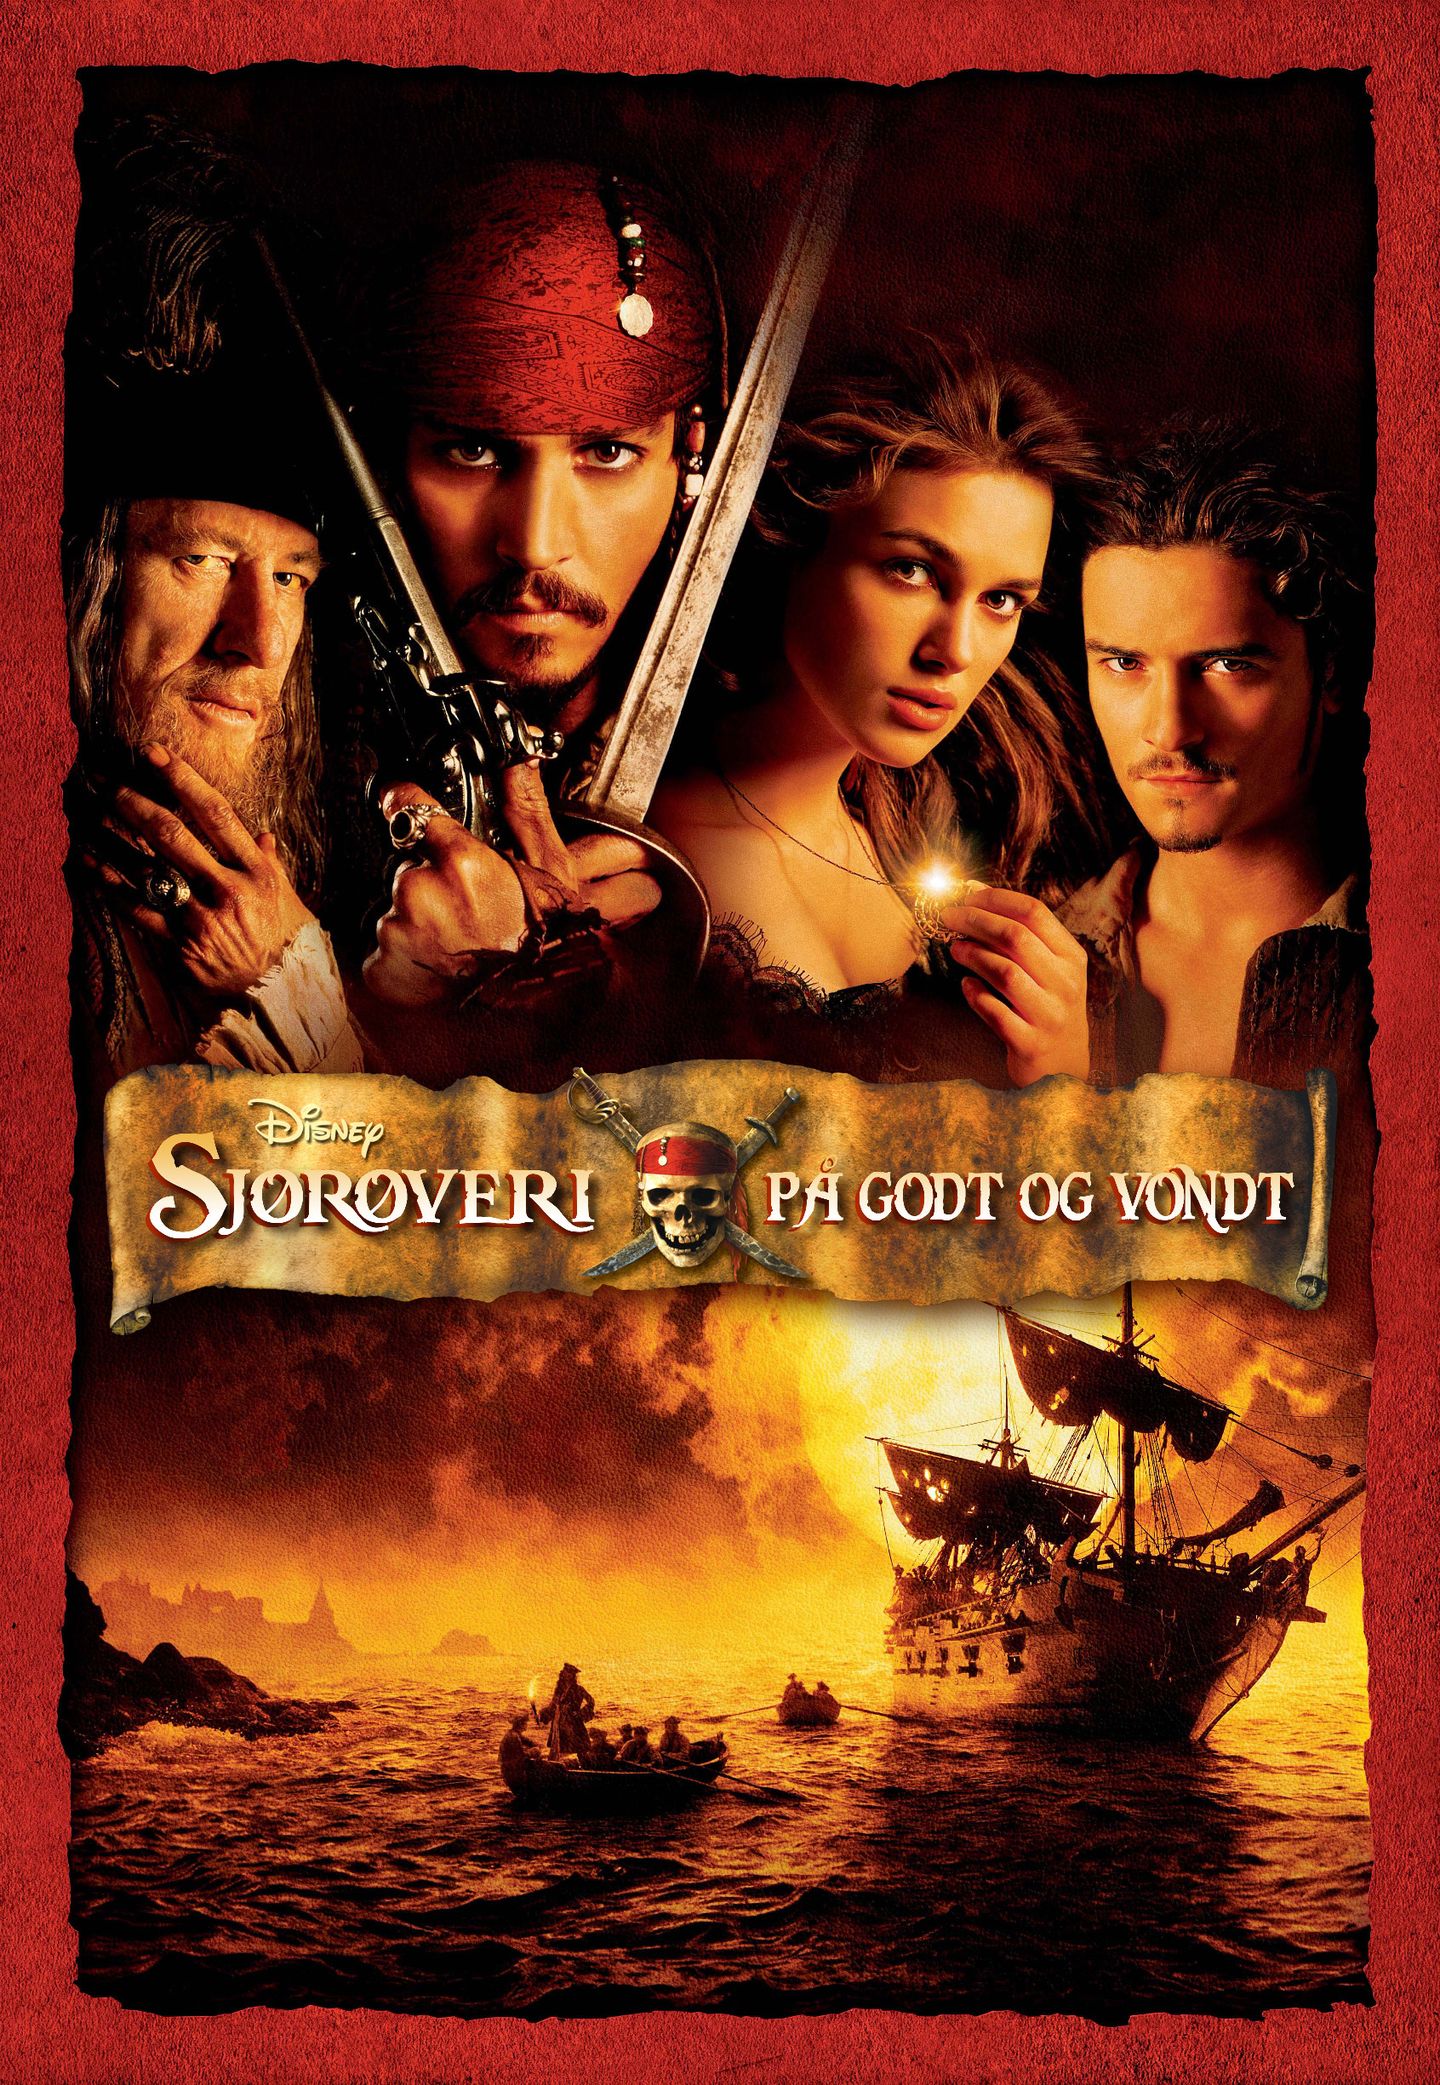 Sjørøveri på godt og vondt kunne vært en norsk tittel for Pirates of the Caribbean